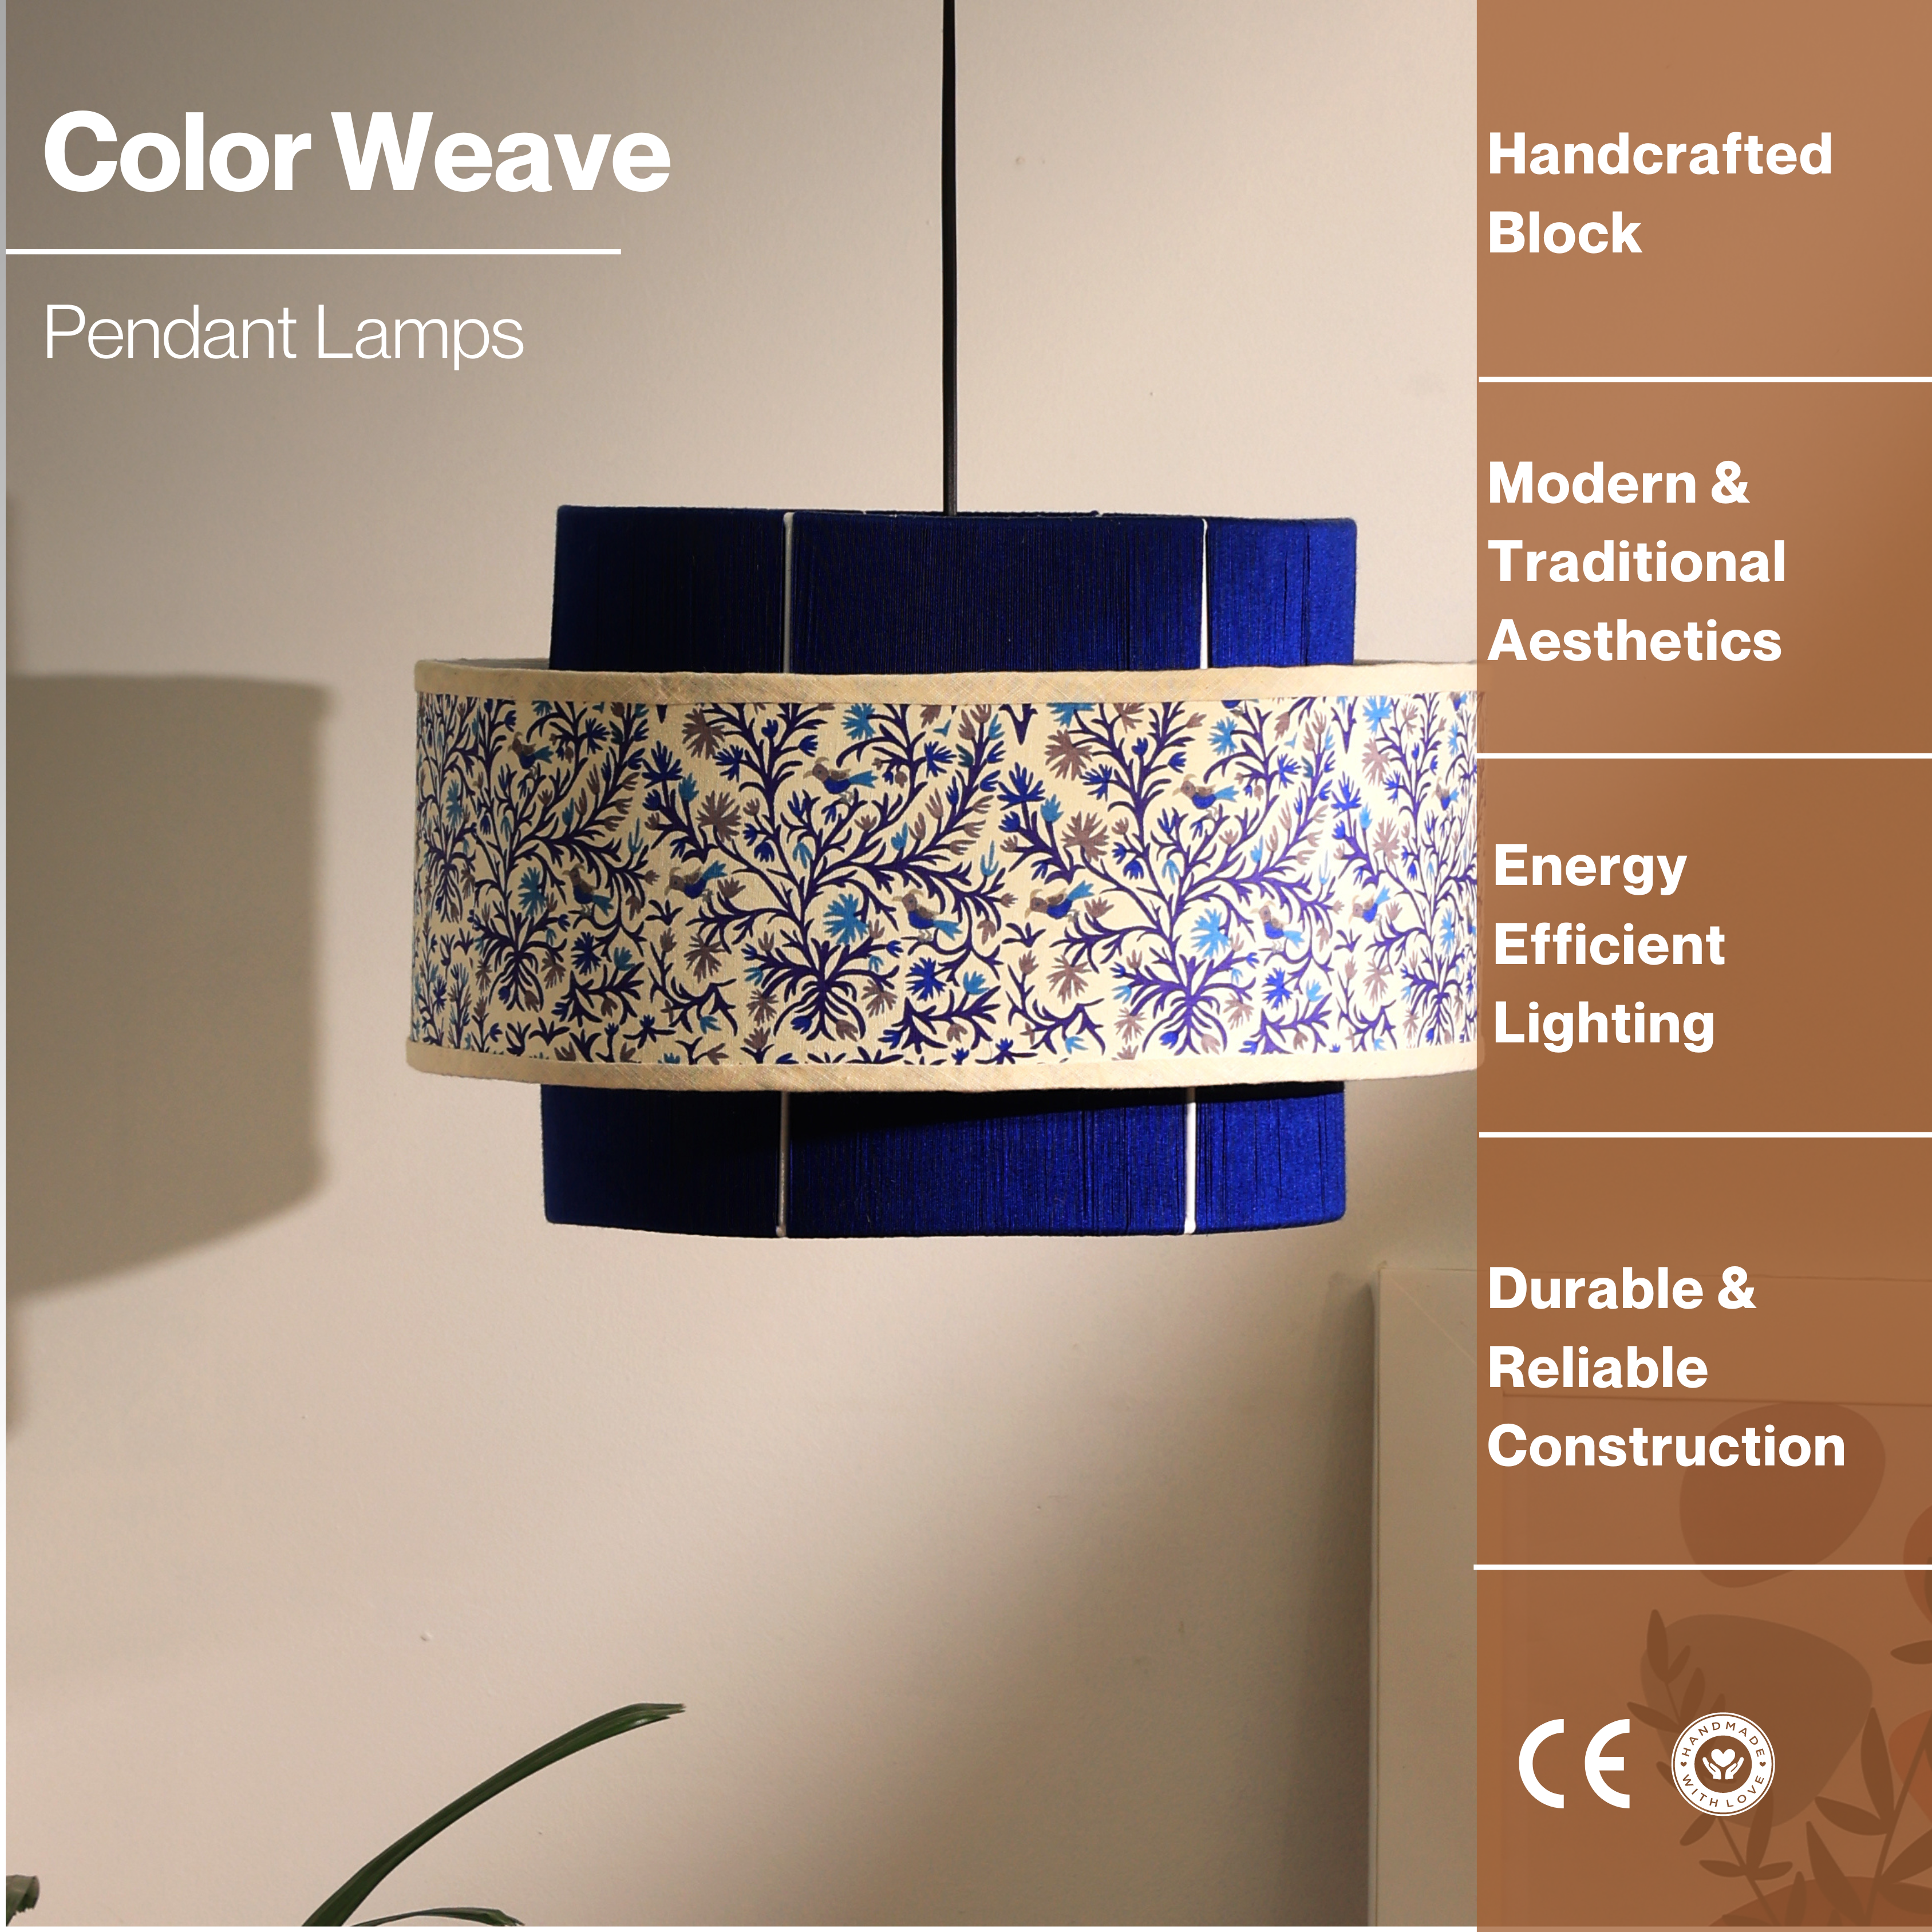 Colour Weave Pendant Lamp - Threading, Handmade Pendant Light, Scandi-Style Hanging Light